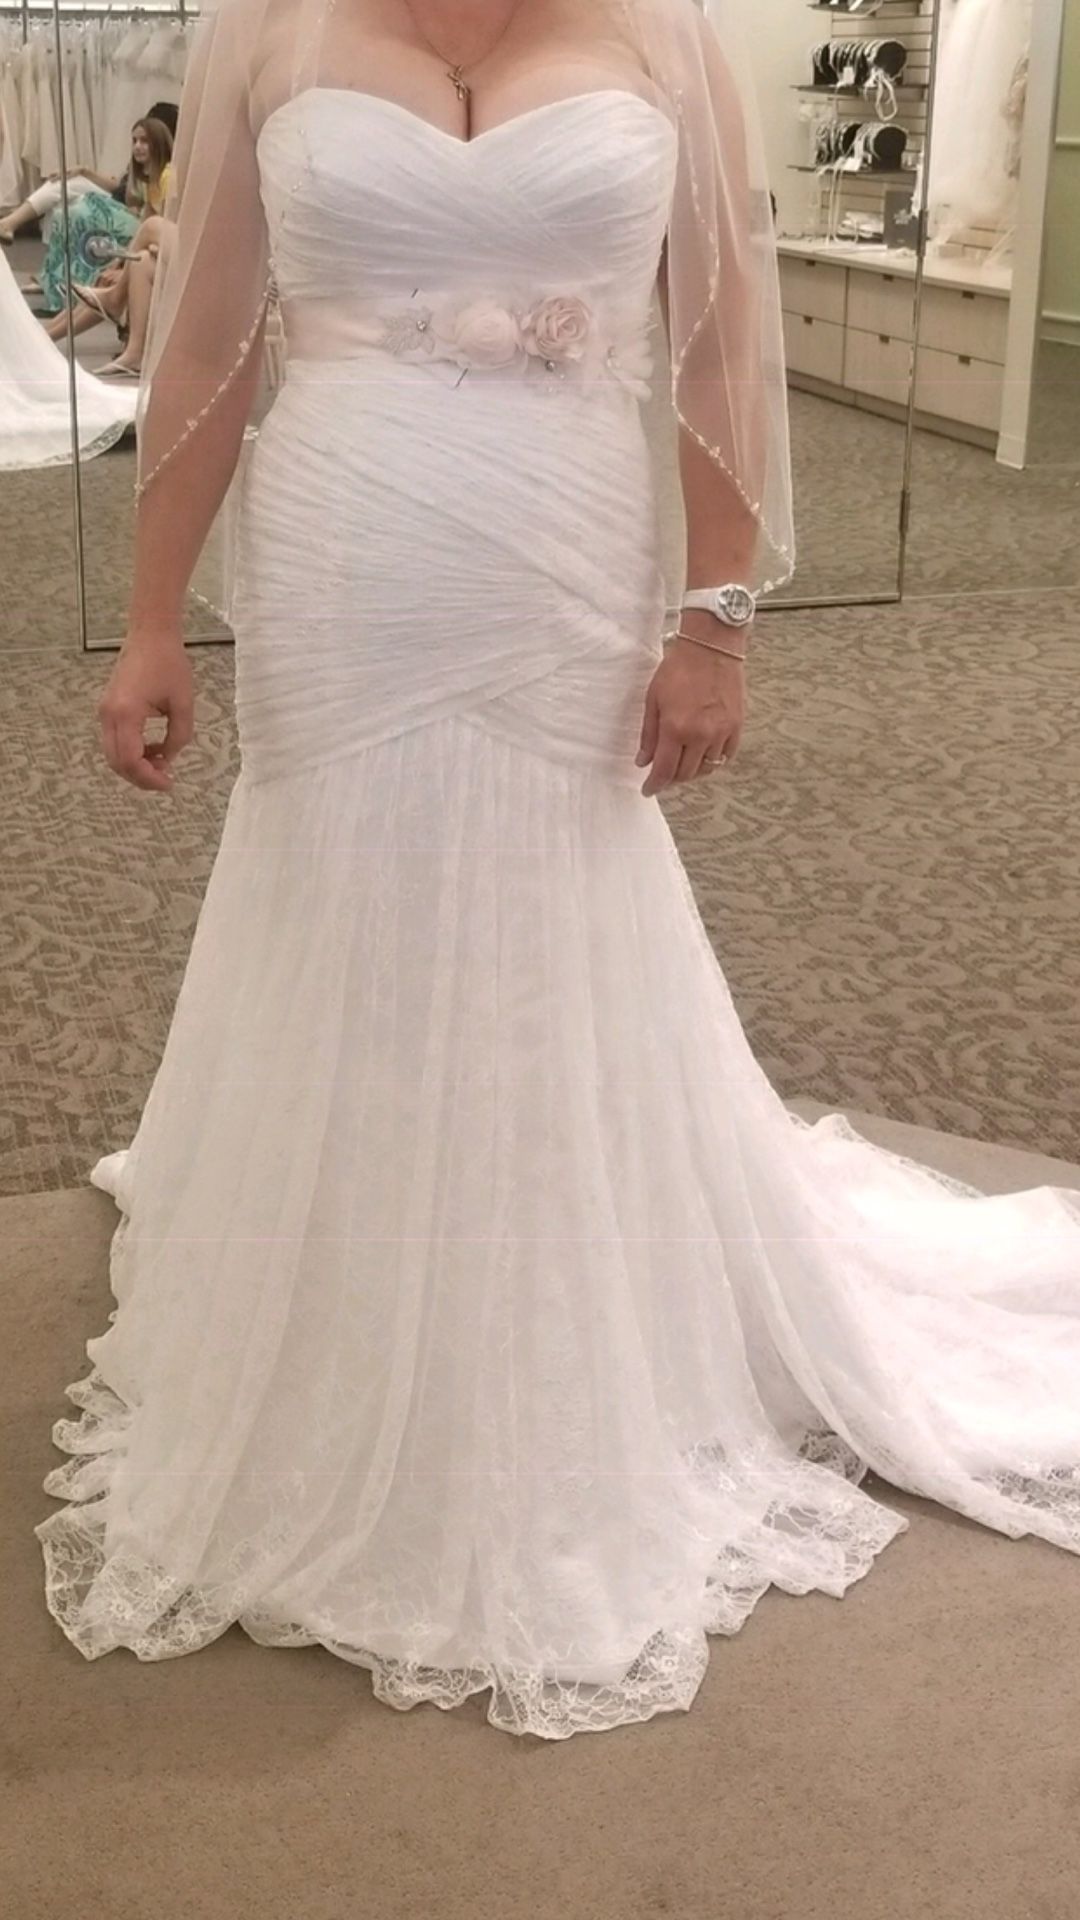 Size 14 wedding dress